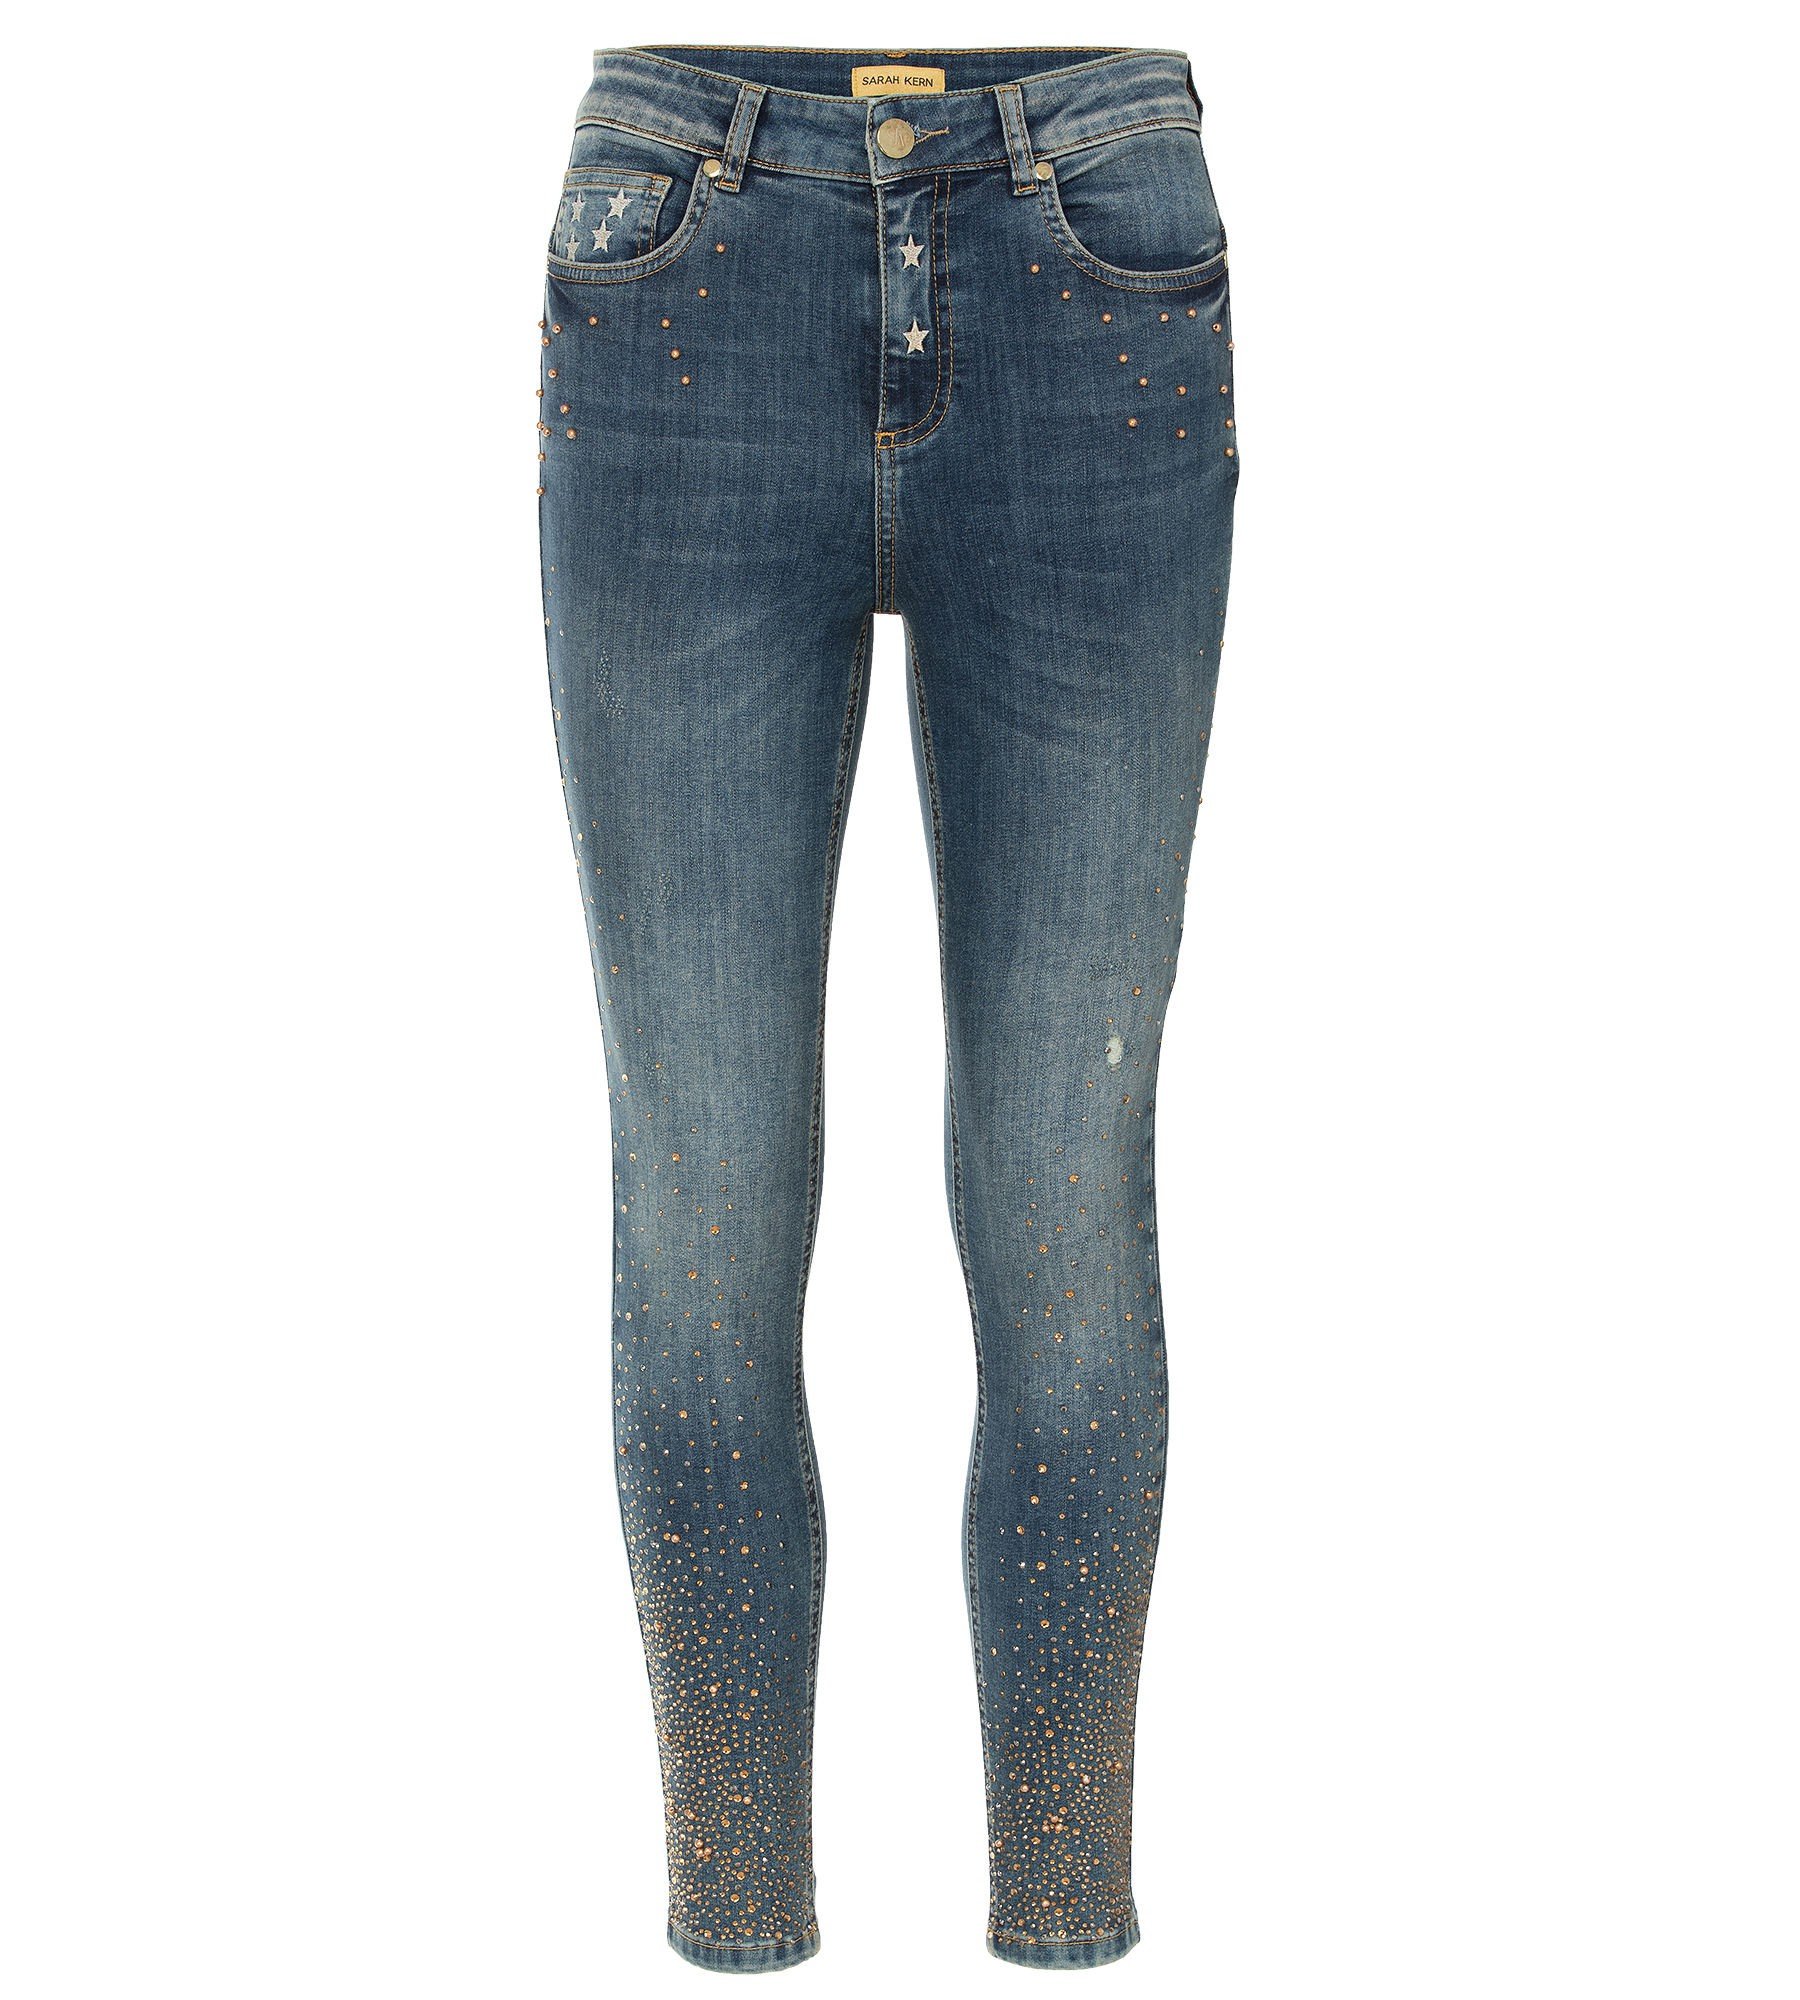 Jeanshose mit Sternenstickerei - Fashion - Sarah Kern - Marken